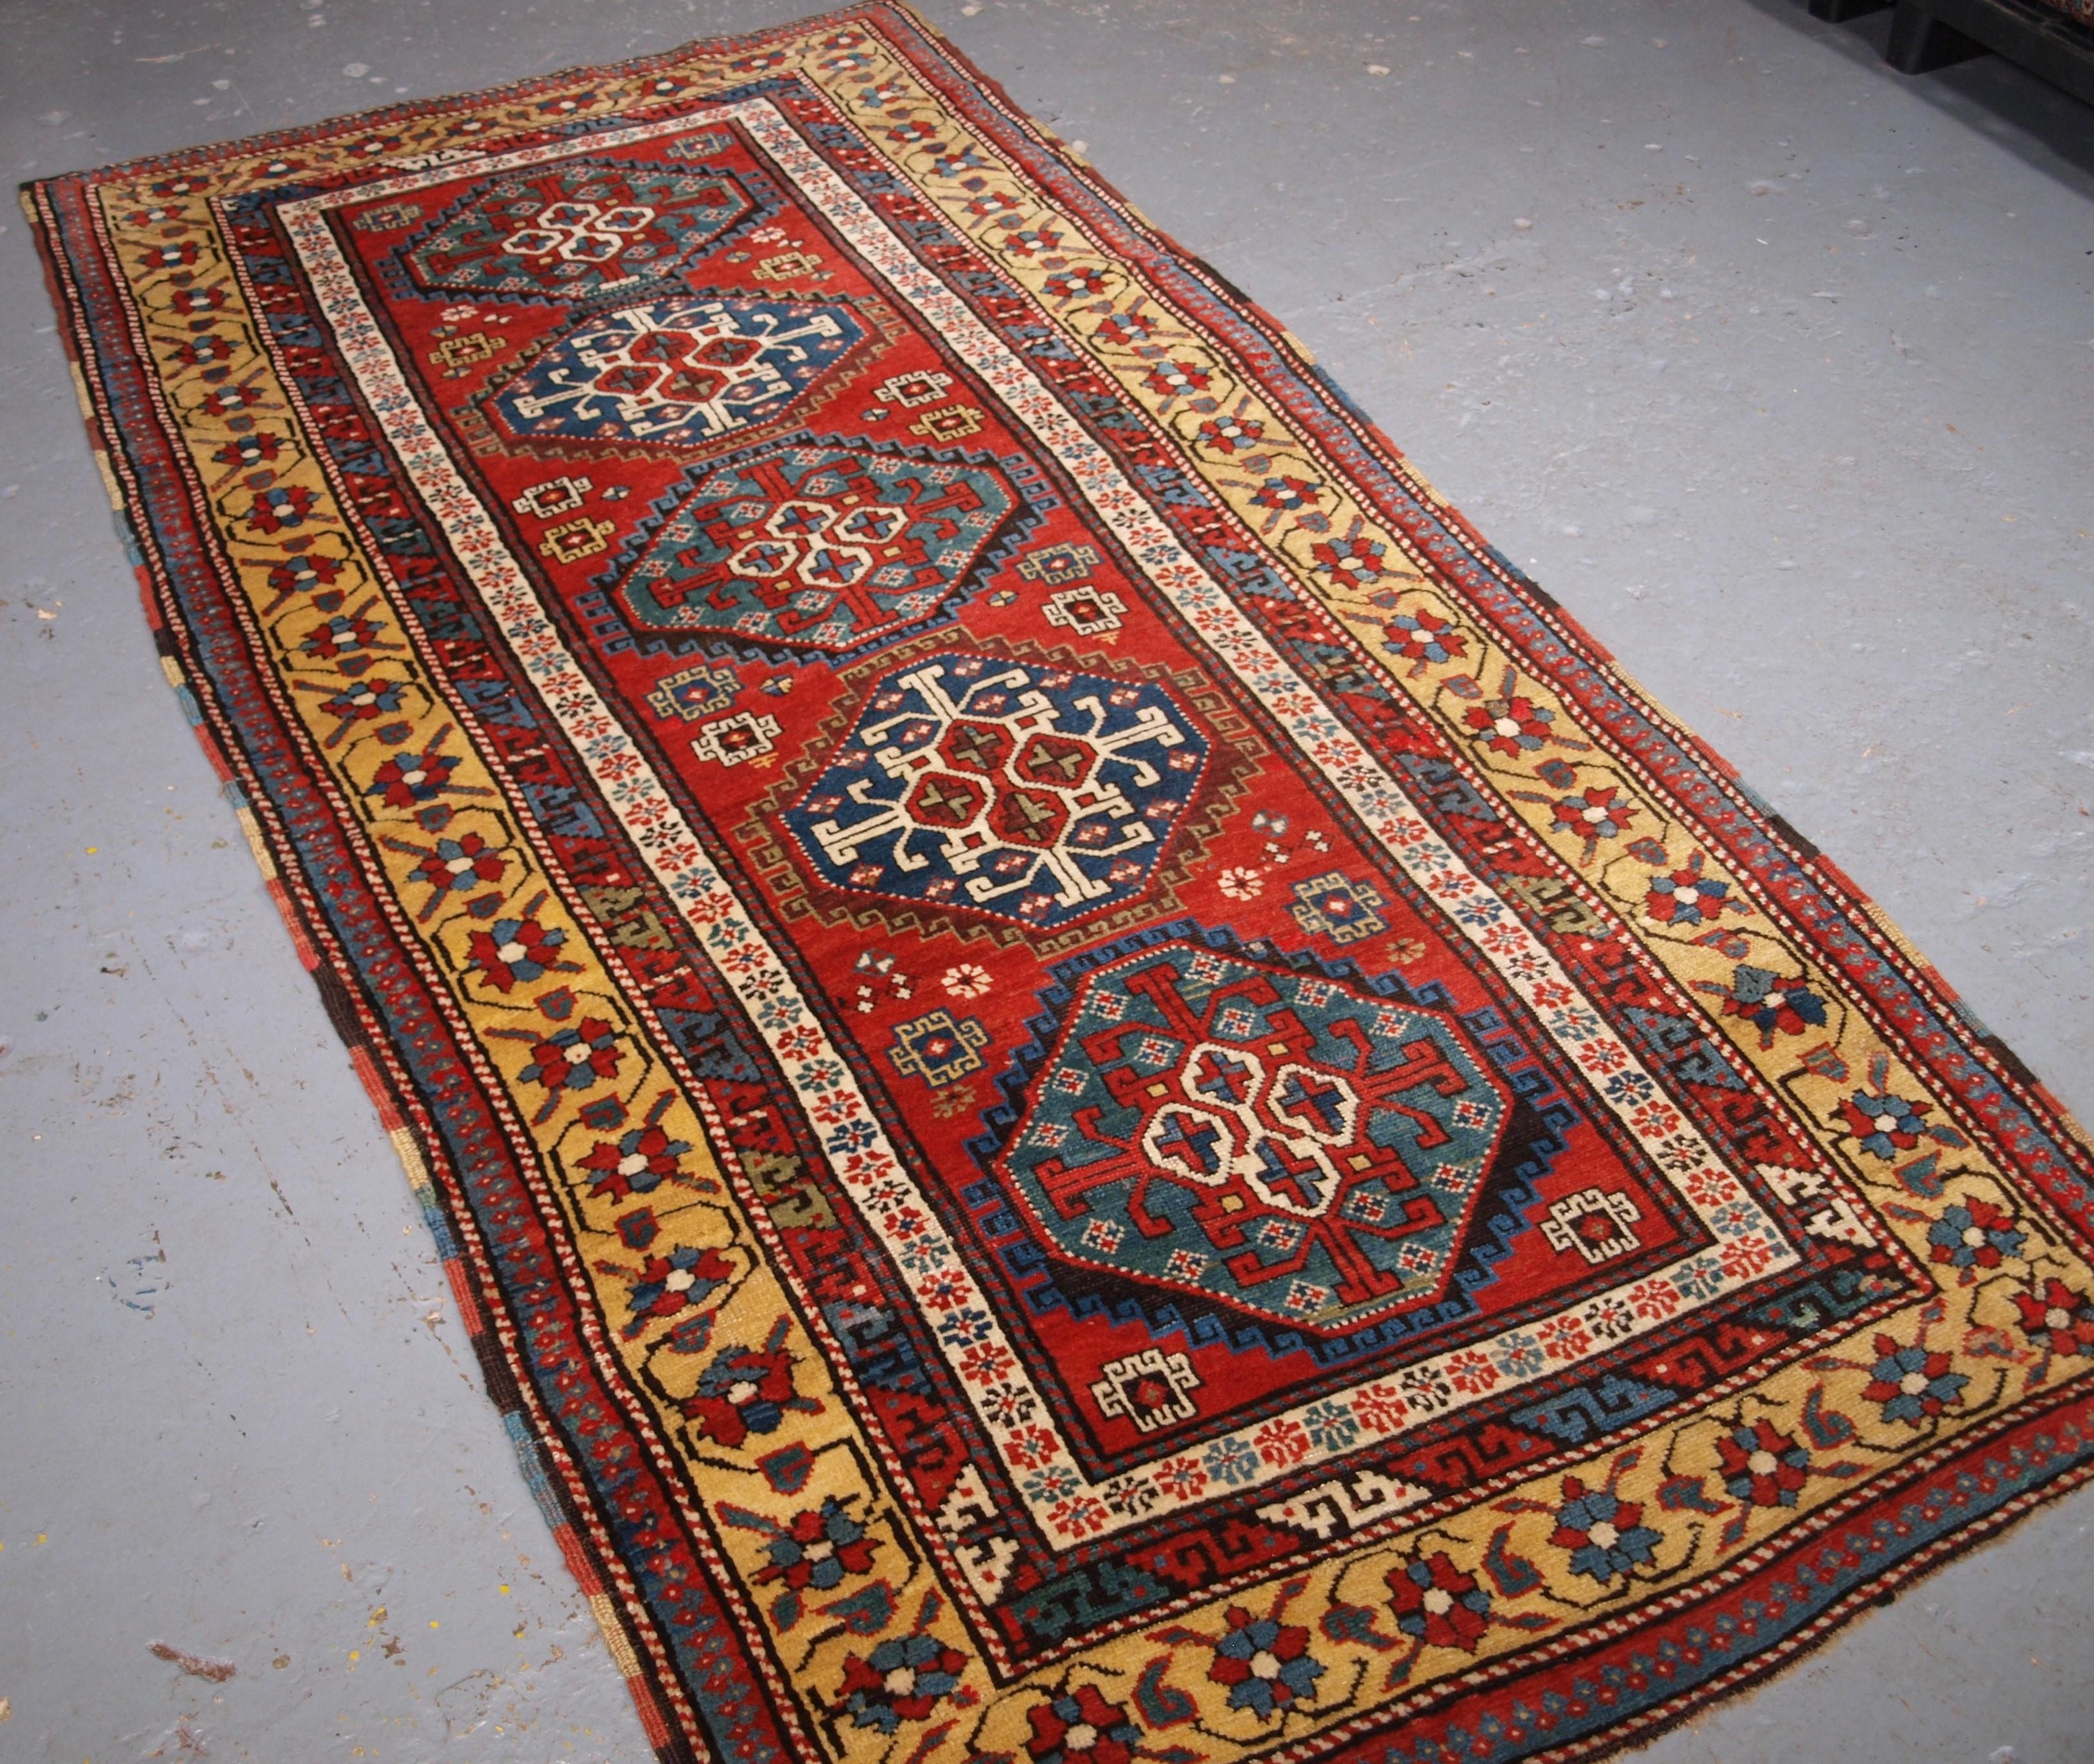 Ancien tapis long de la région du South Antiques Karabagh, avec une rangée verticale de cinq octogones sur un fond rouge clair. Il s'agit d'un exemple exceptionnel de tissage caucasien. La laine est d'excellente qualité, très douce au toucher, et